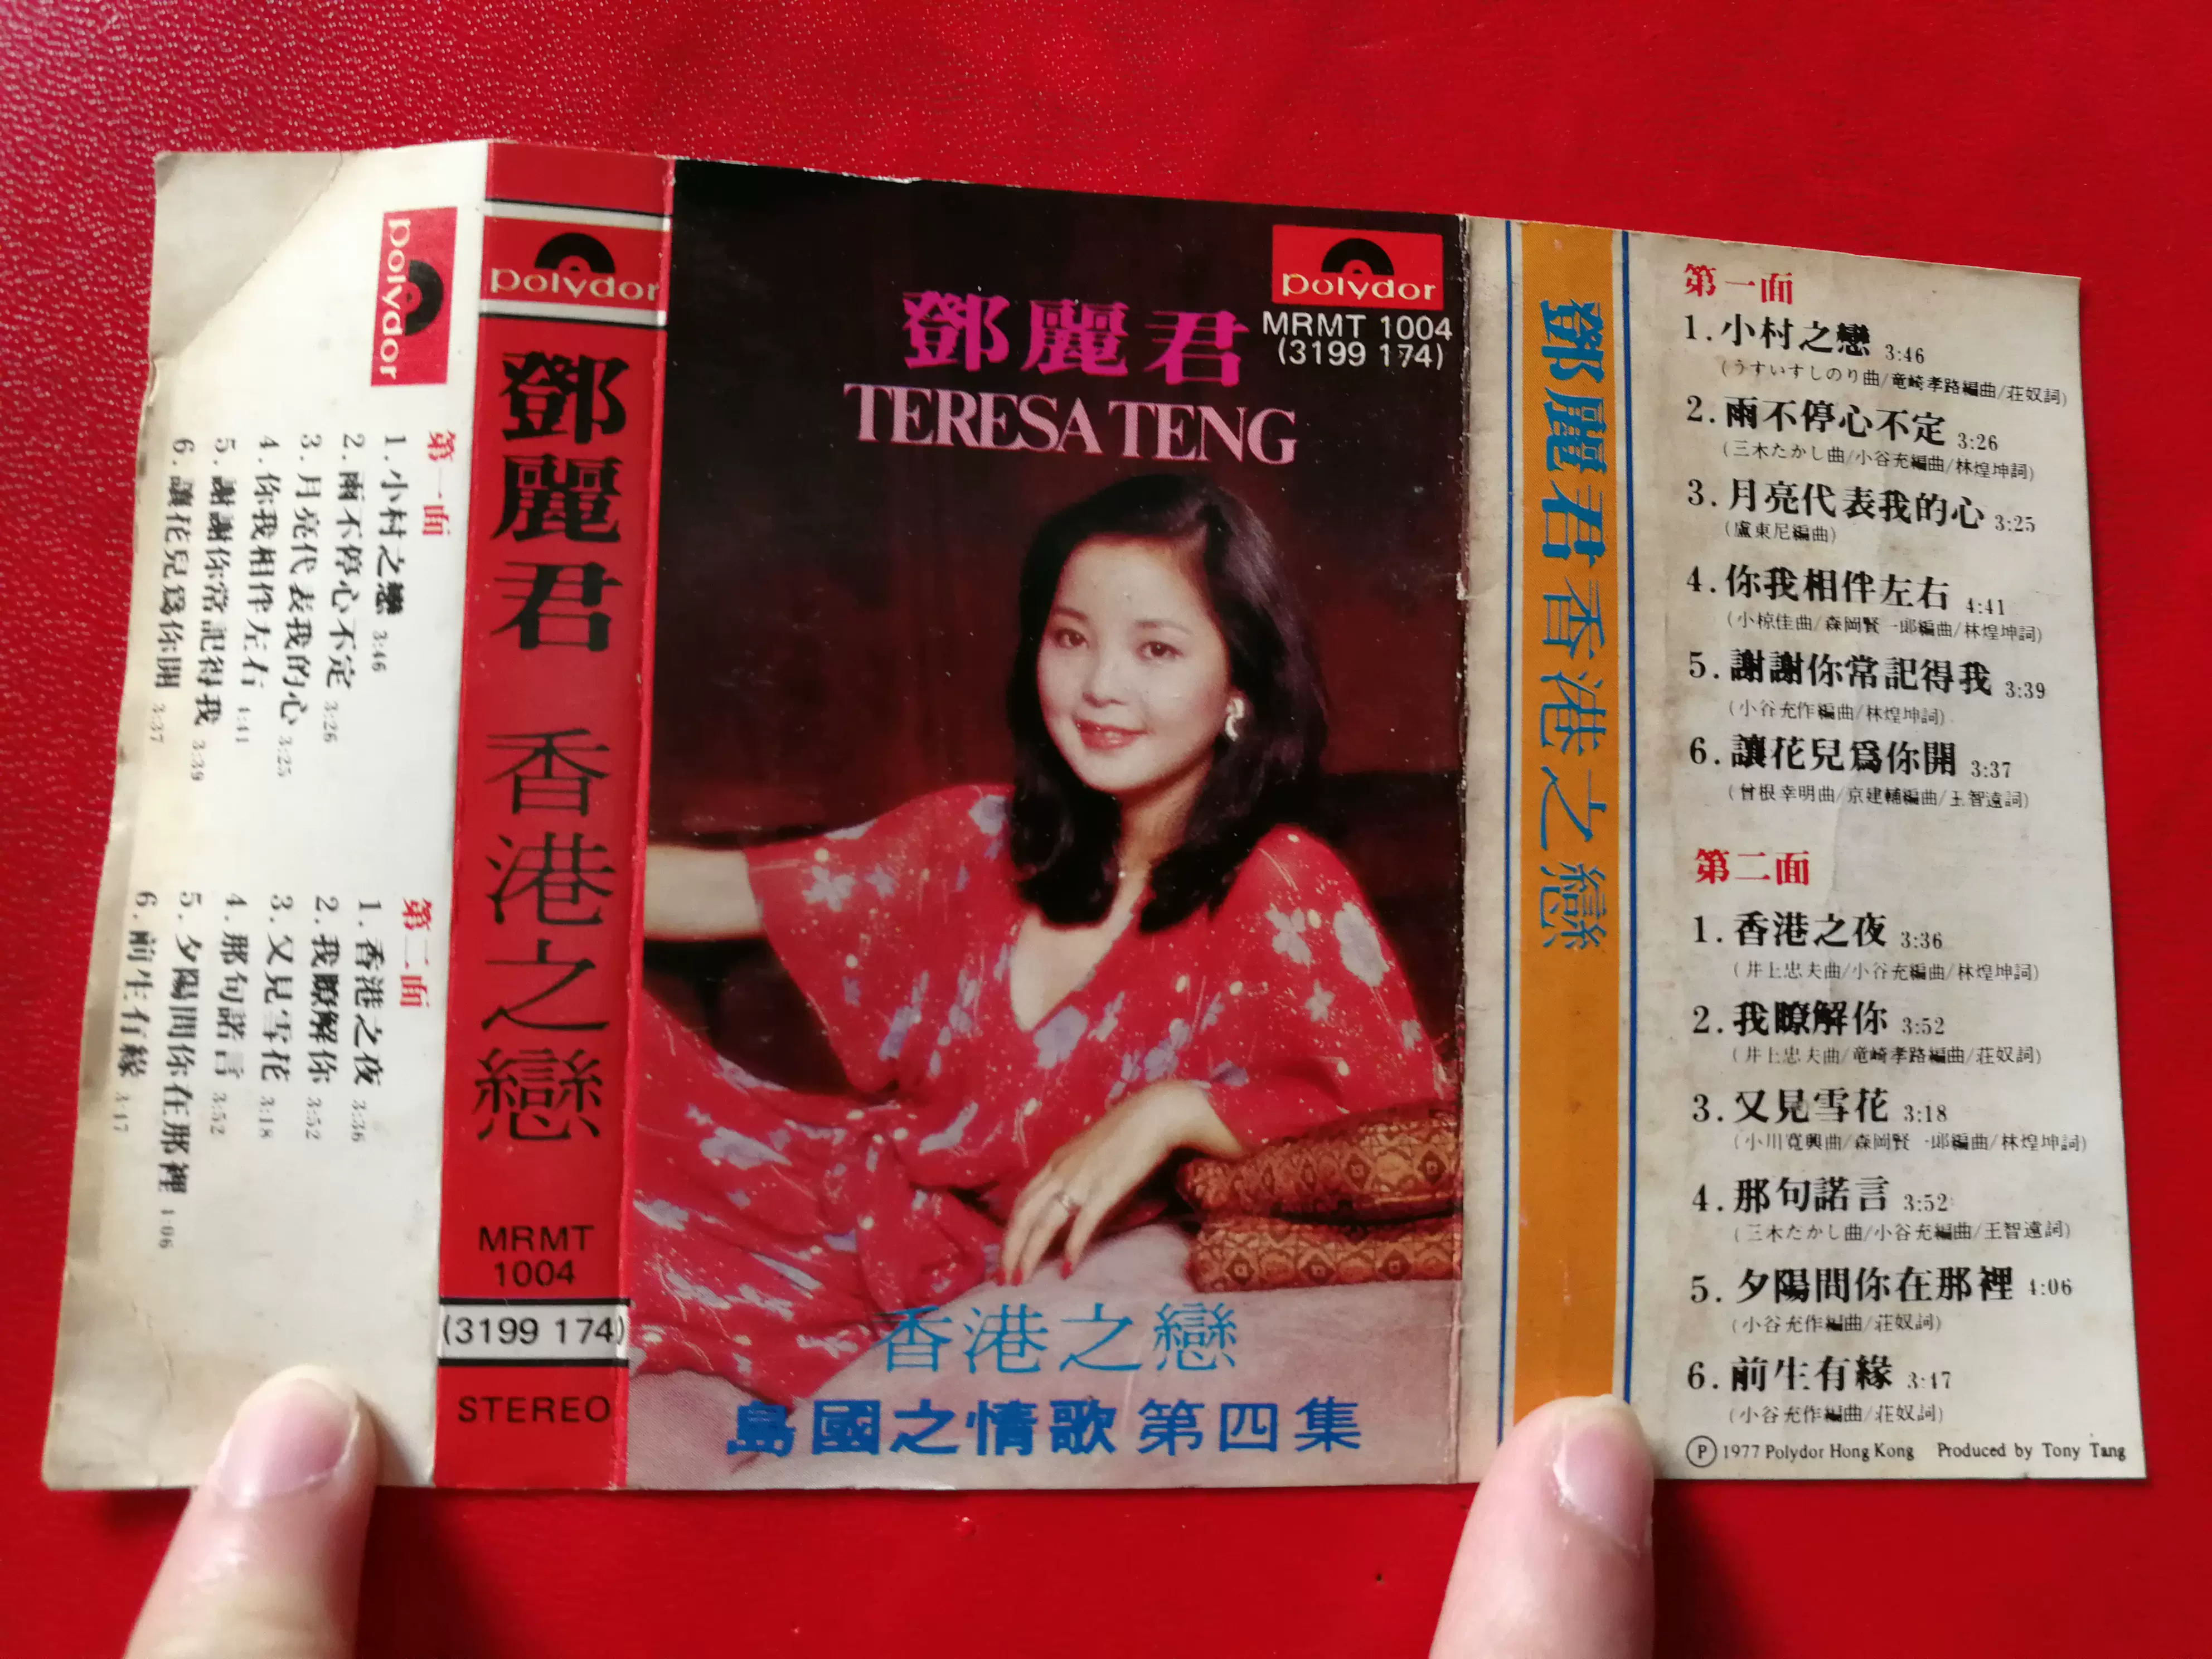 原裝舊版鄧麗君香港之戀島國之情歌第四集保麗金錄音帶-Taobao